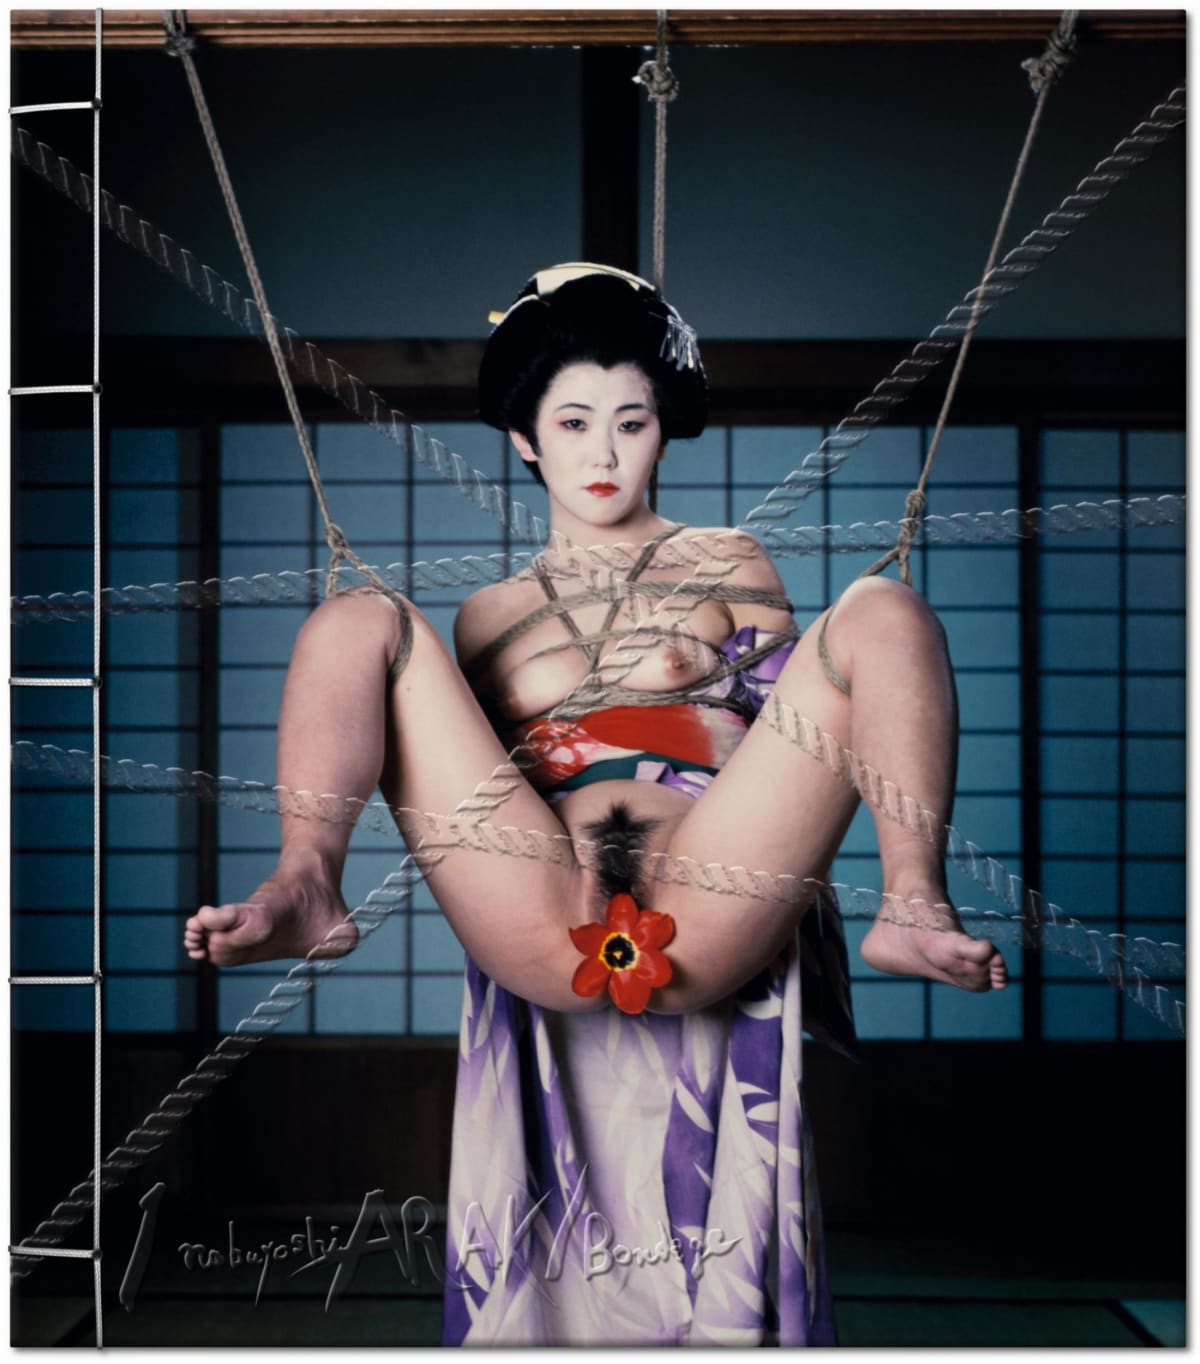 Araki. Bondage. Art Edition No. 101–150 ‘Untitled, 1994’